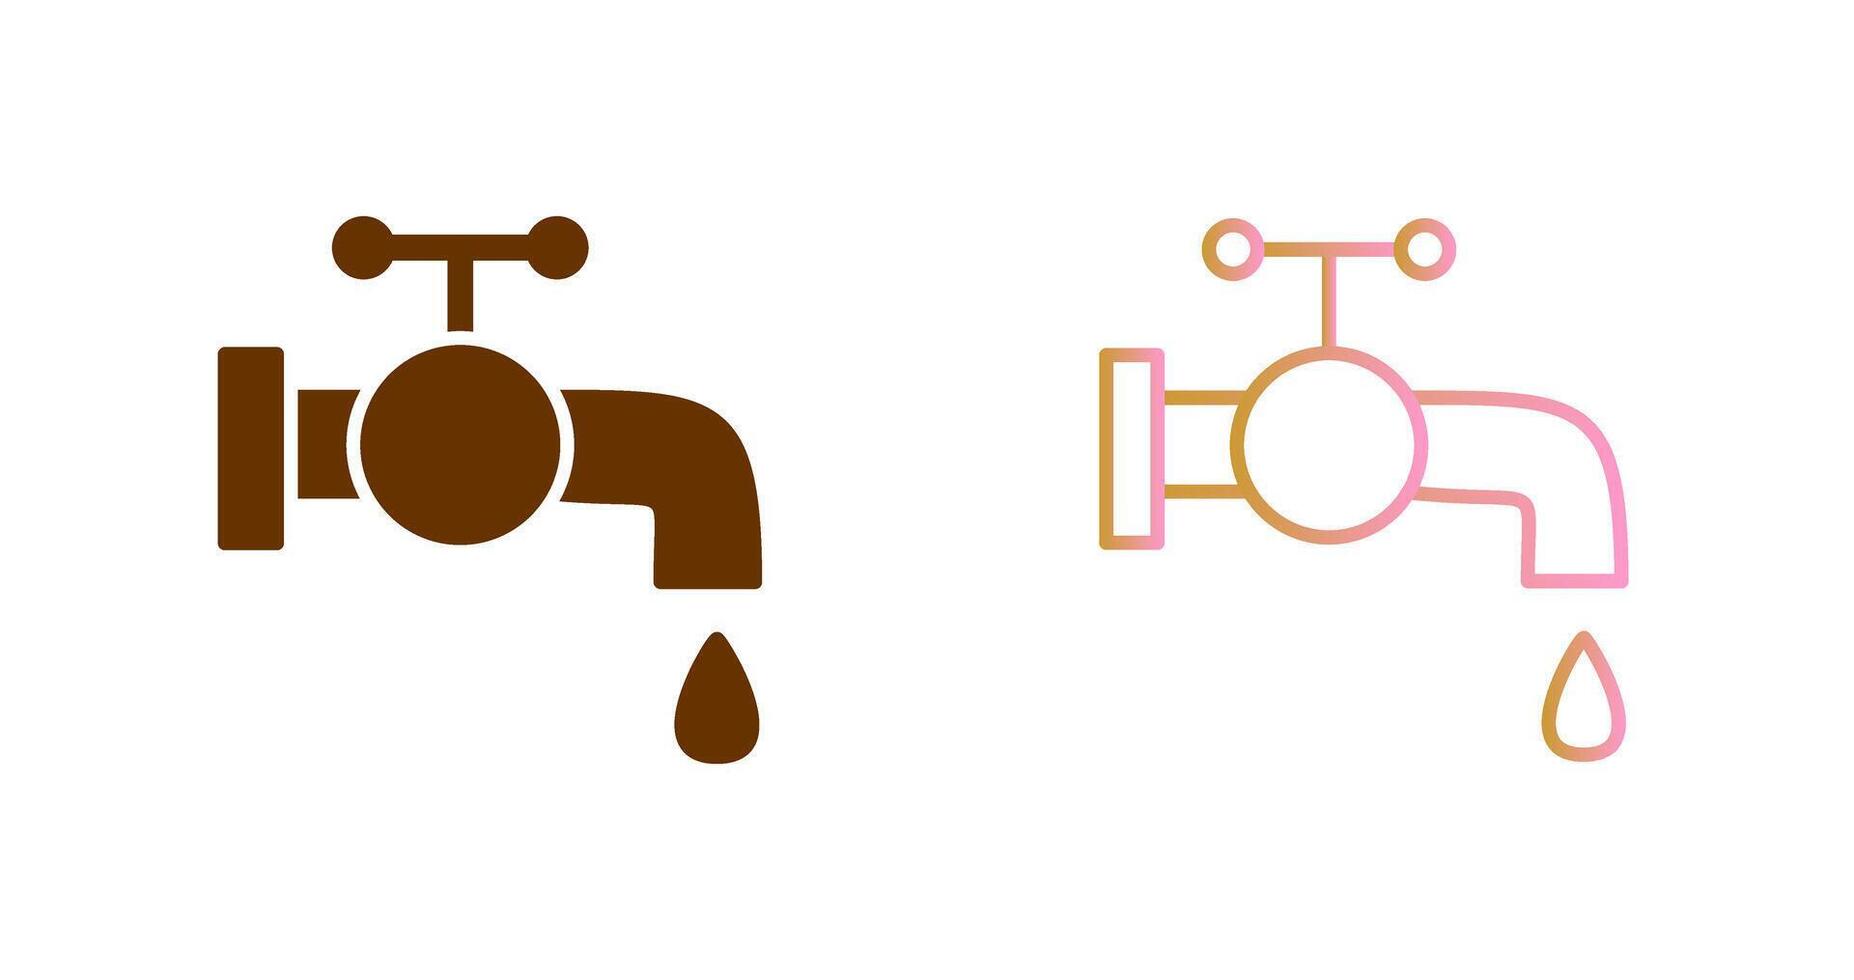 design de ícone de torneira de água vetor